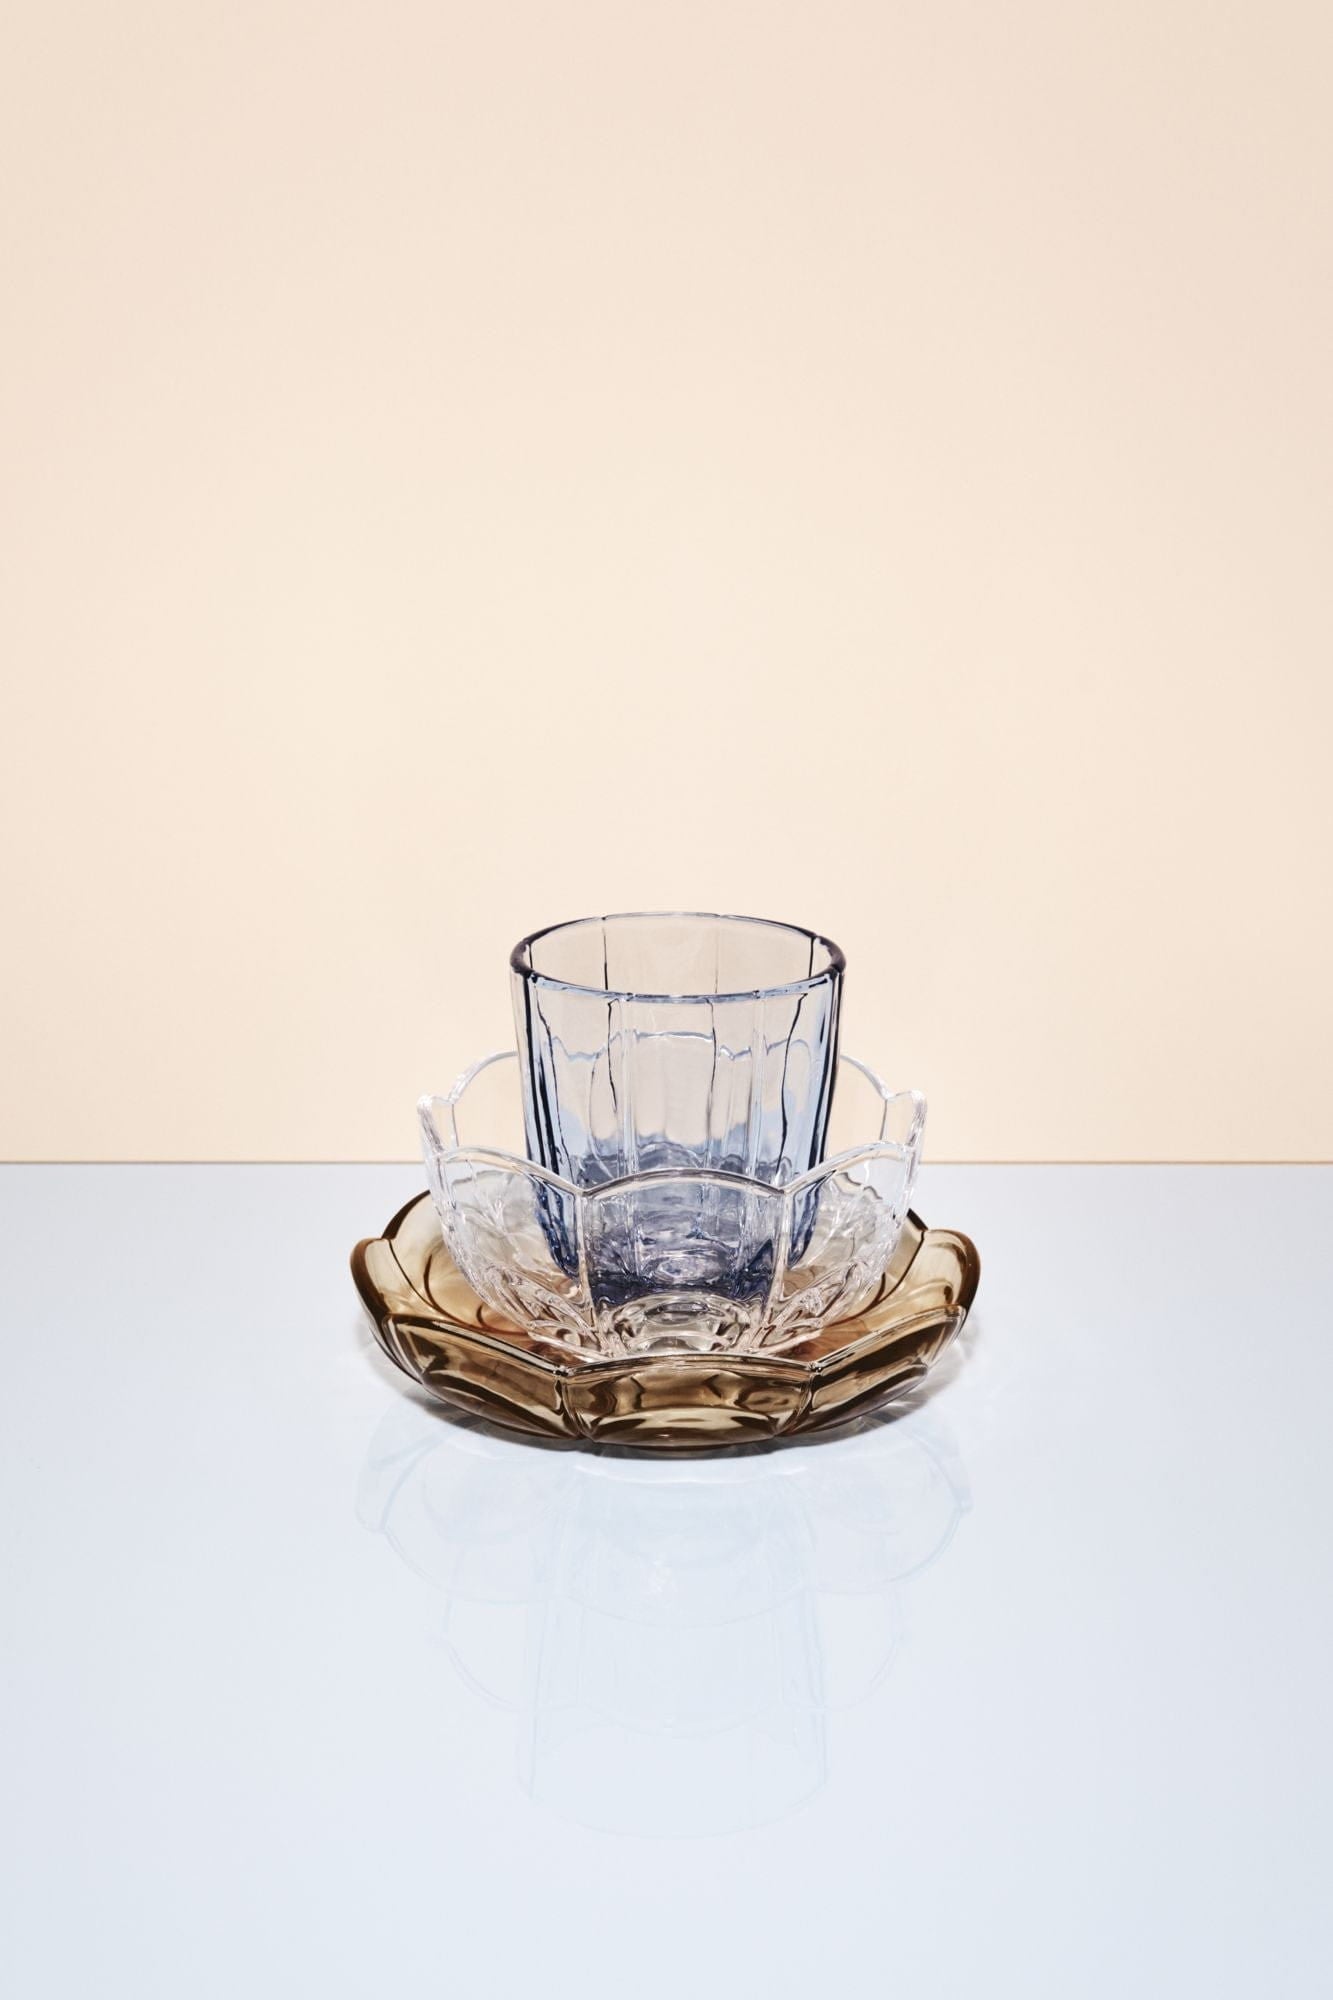 Set di vetro d'acqua di giglio di Holmegaard di 2 320 ml, blu